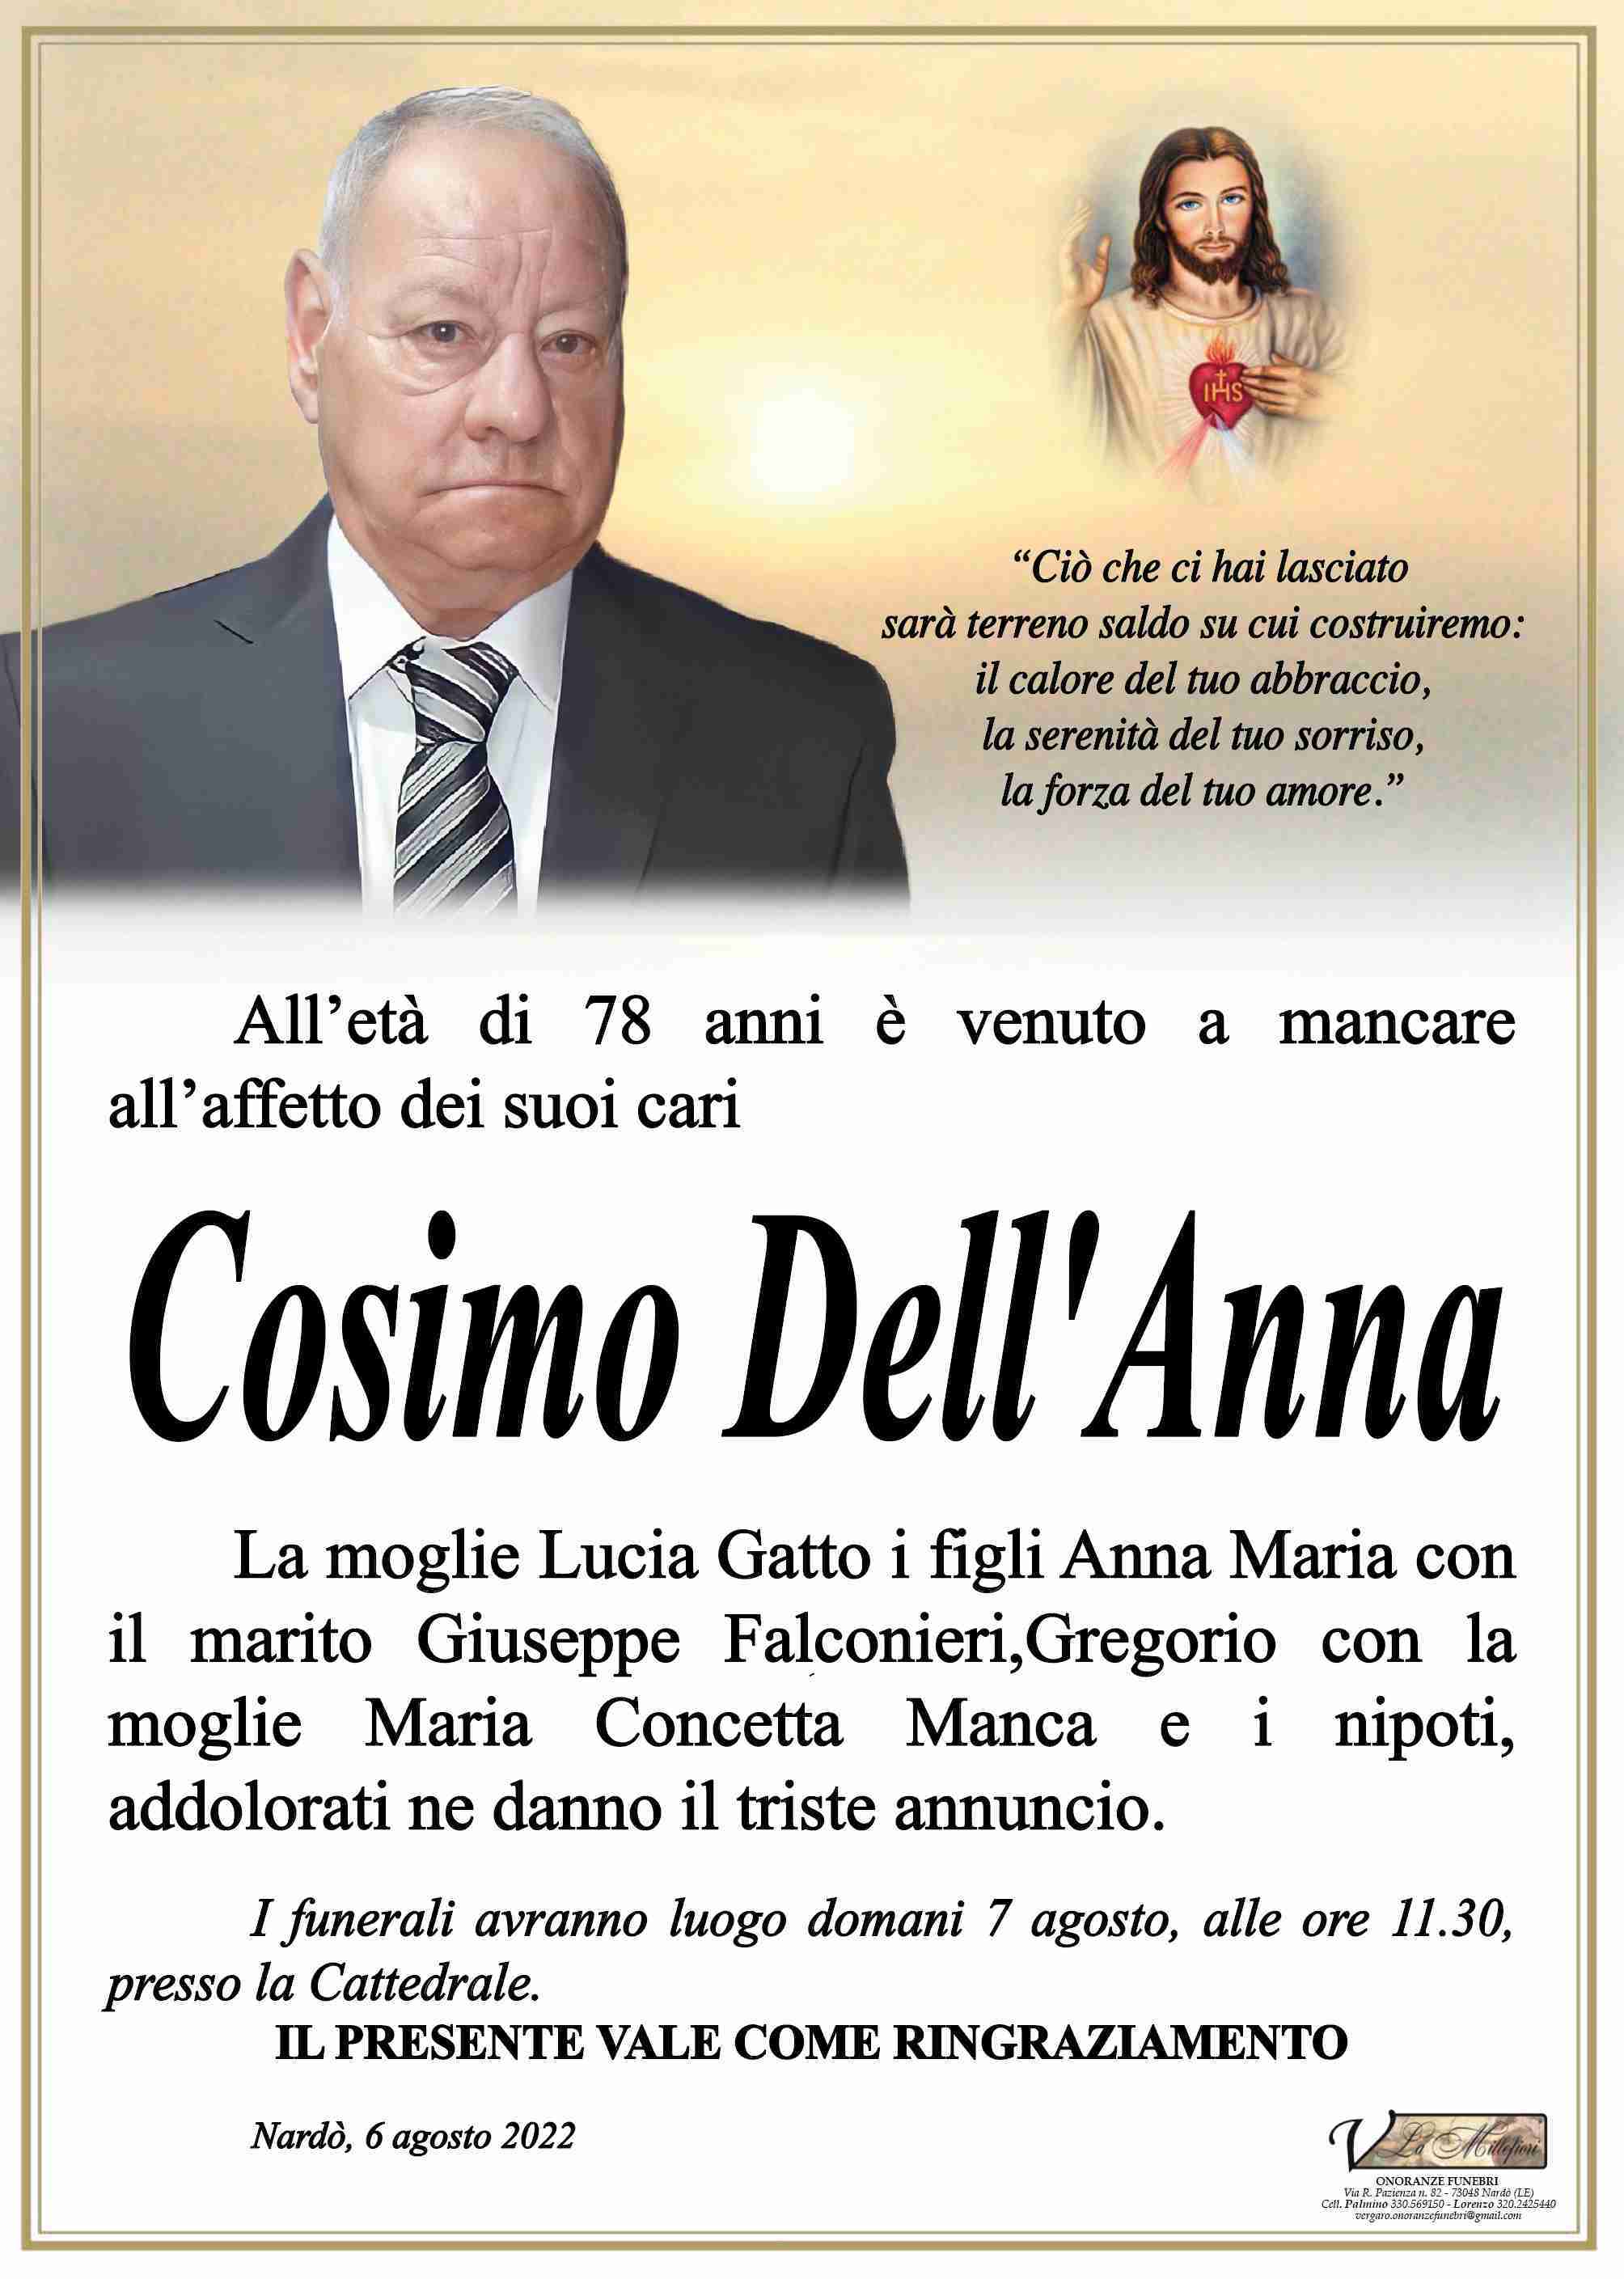 Cosimo Dell'Anna